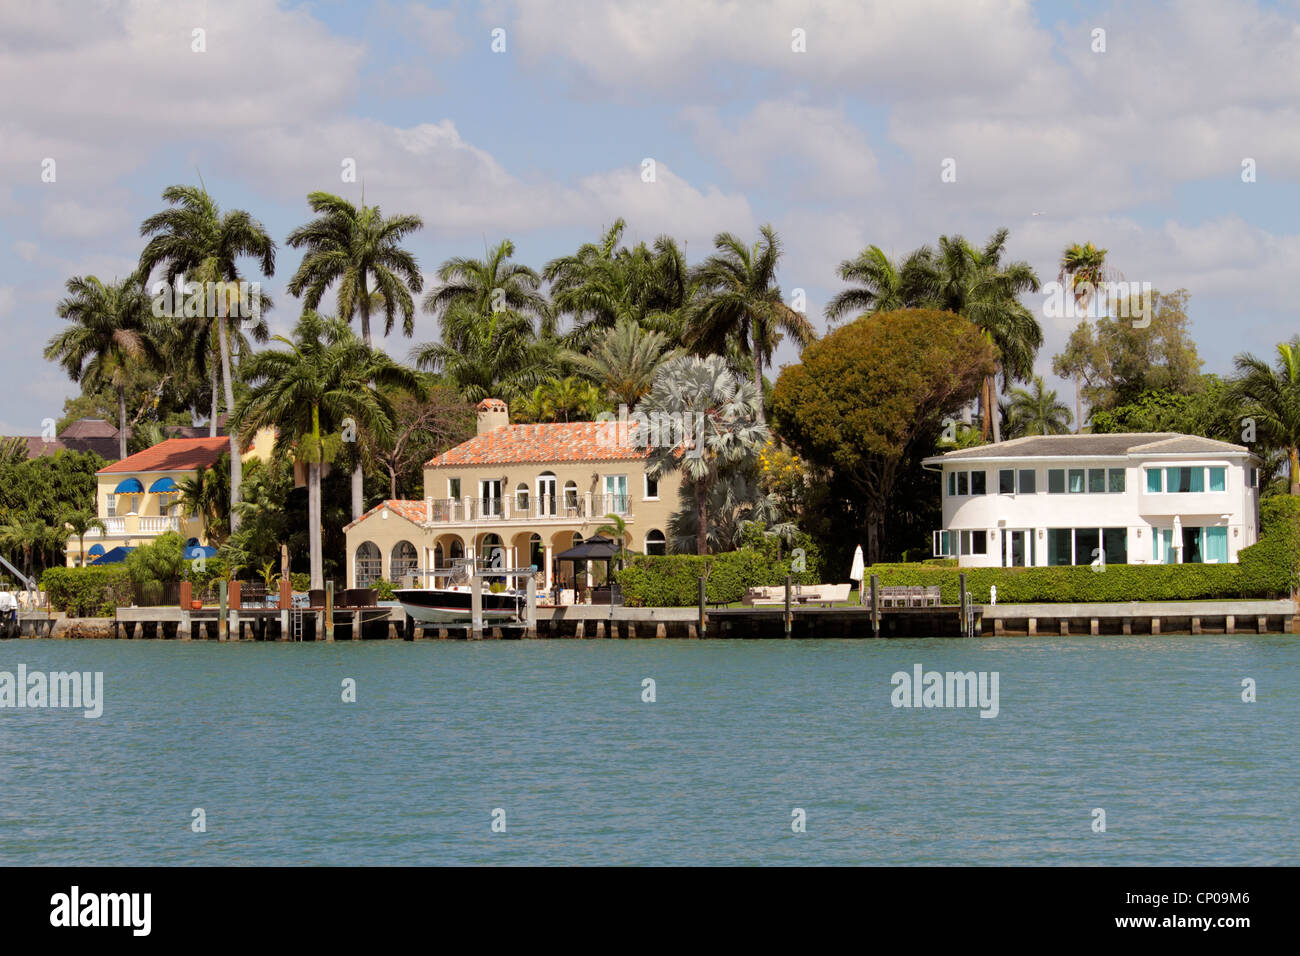 Miami Beach Florida, Biscayne Bay, Venetian Islands, Häuser am Wasser, Villen, Palmen, FL120331305 Stockfoto